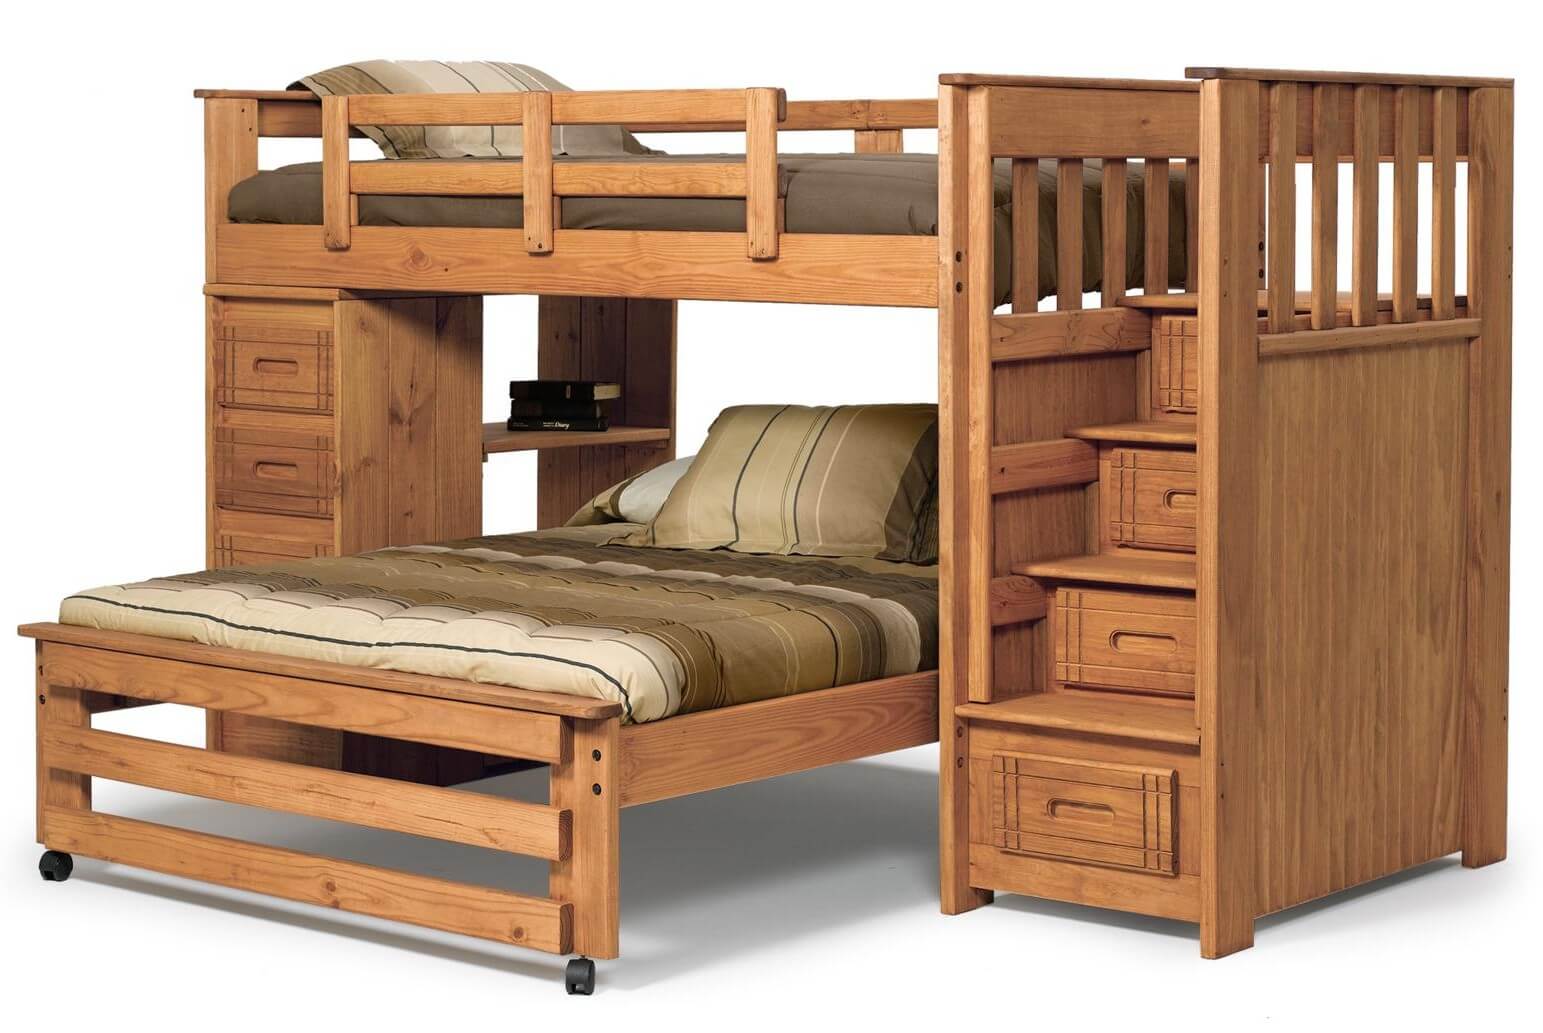 这是松木l型的双人床。上铺没有梯子，而是有一个储物楼梯。下面的床是有轮子的。楼梯对面的一侧包括抽屉和开放式书架。